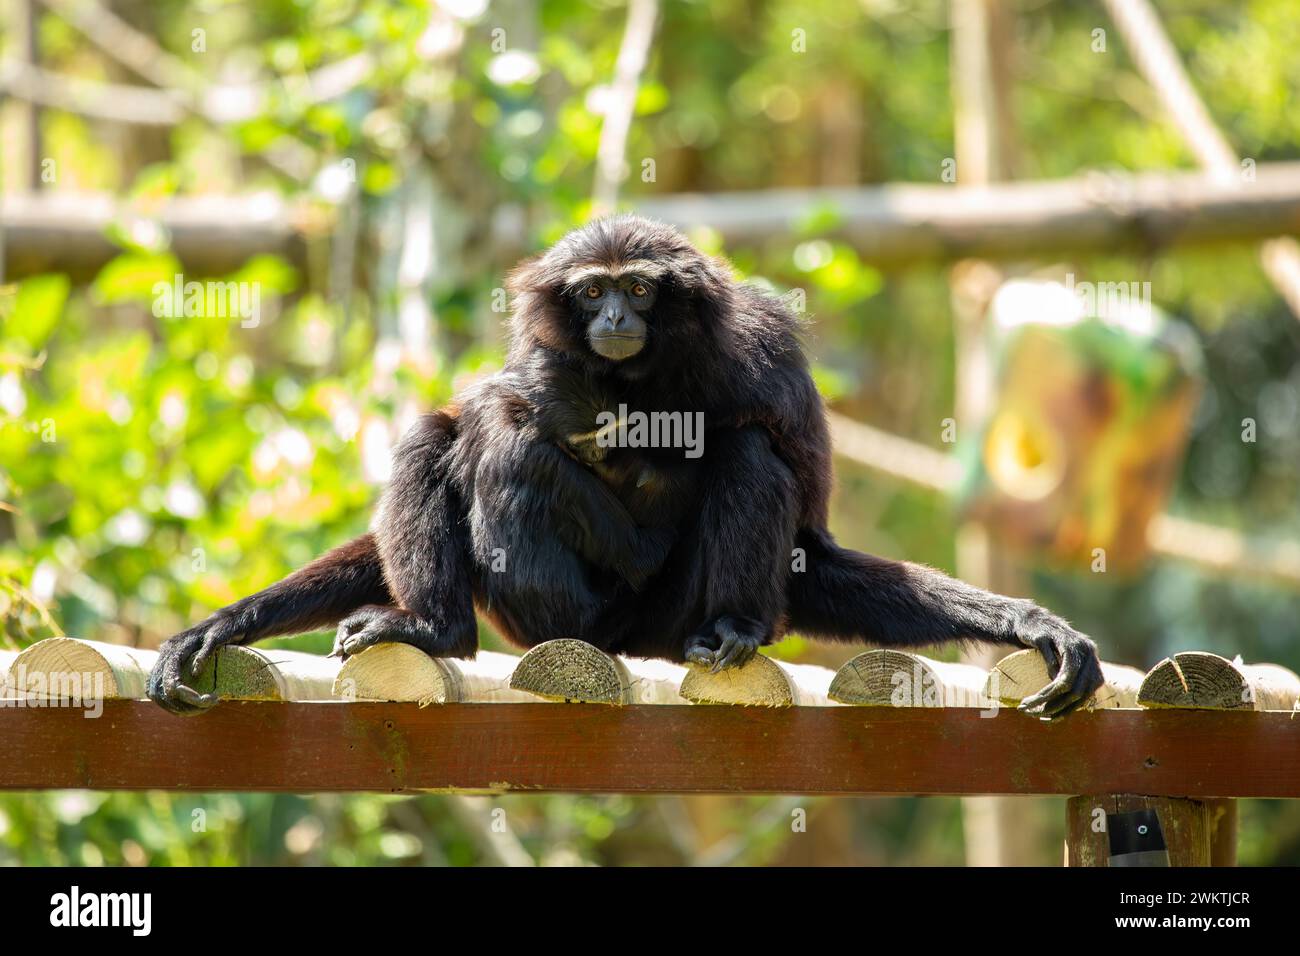 Der wendige Gibbon schwingt anmutig durch die üppigen südostasiatischen Regenwälder, seine eindringlichen rufe hallten im Baumkronen wider. Stockfoto